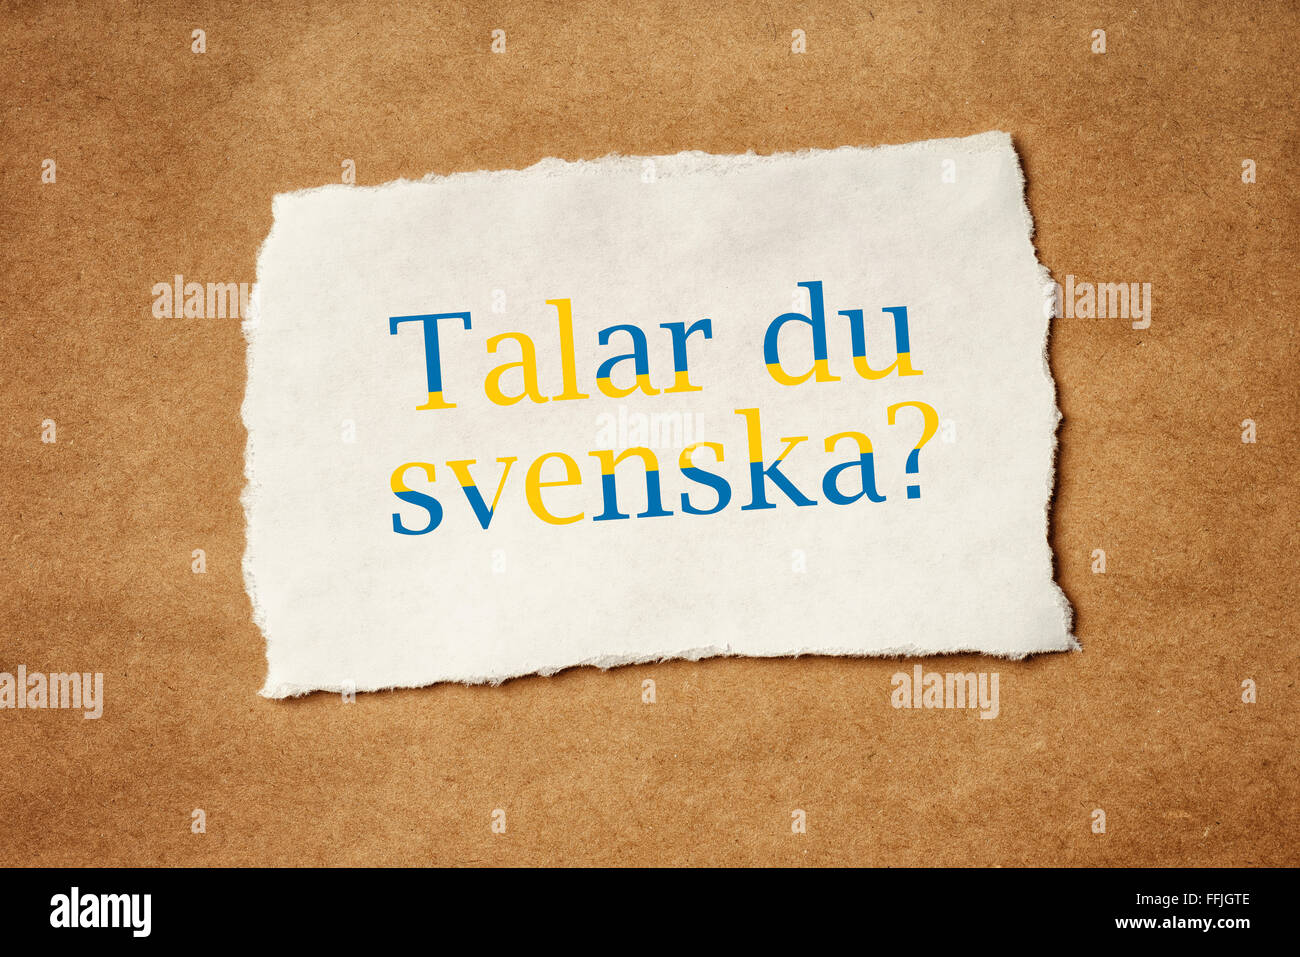 Talarer du Svenska Schwedisch, sprichst du Frage auf Stück Schmierpapier, Schulkonzept Sprache gedruckt. Stockfoto